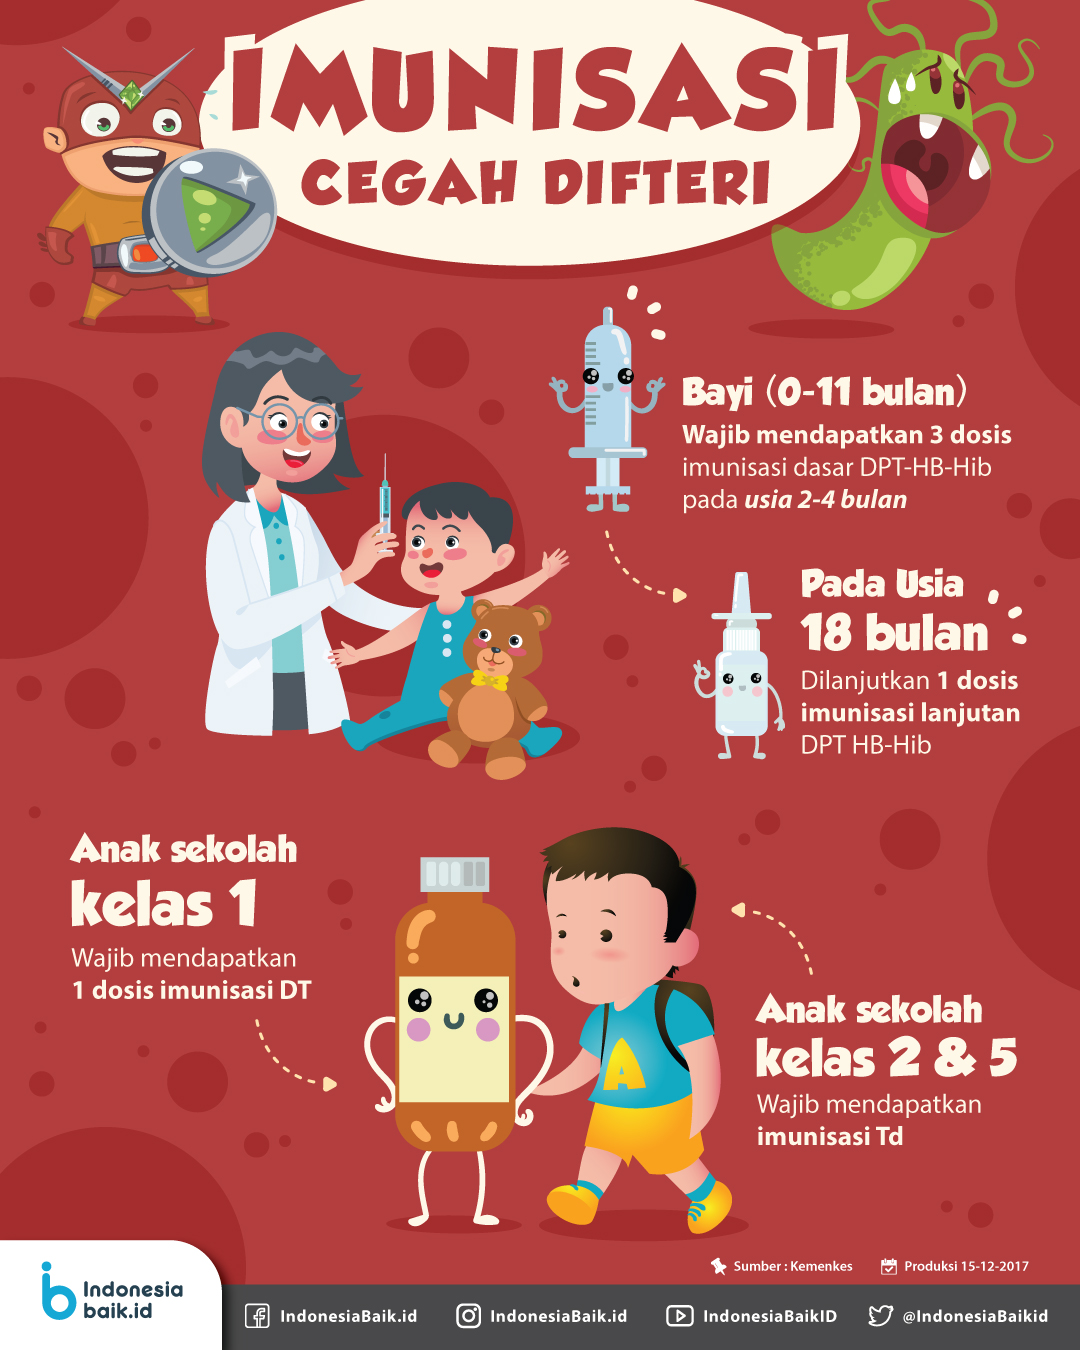 Imunisasi-Cegah-Difteri  Indonesia Baik